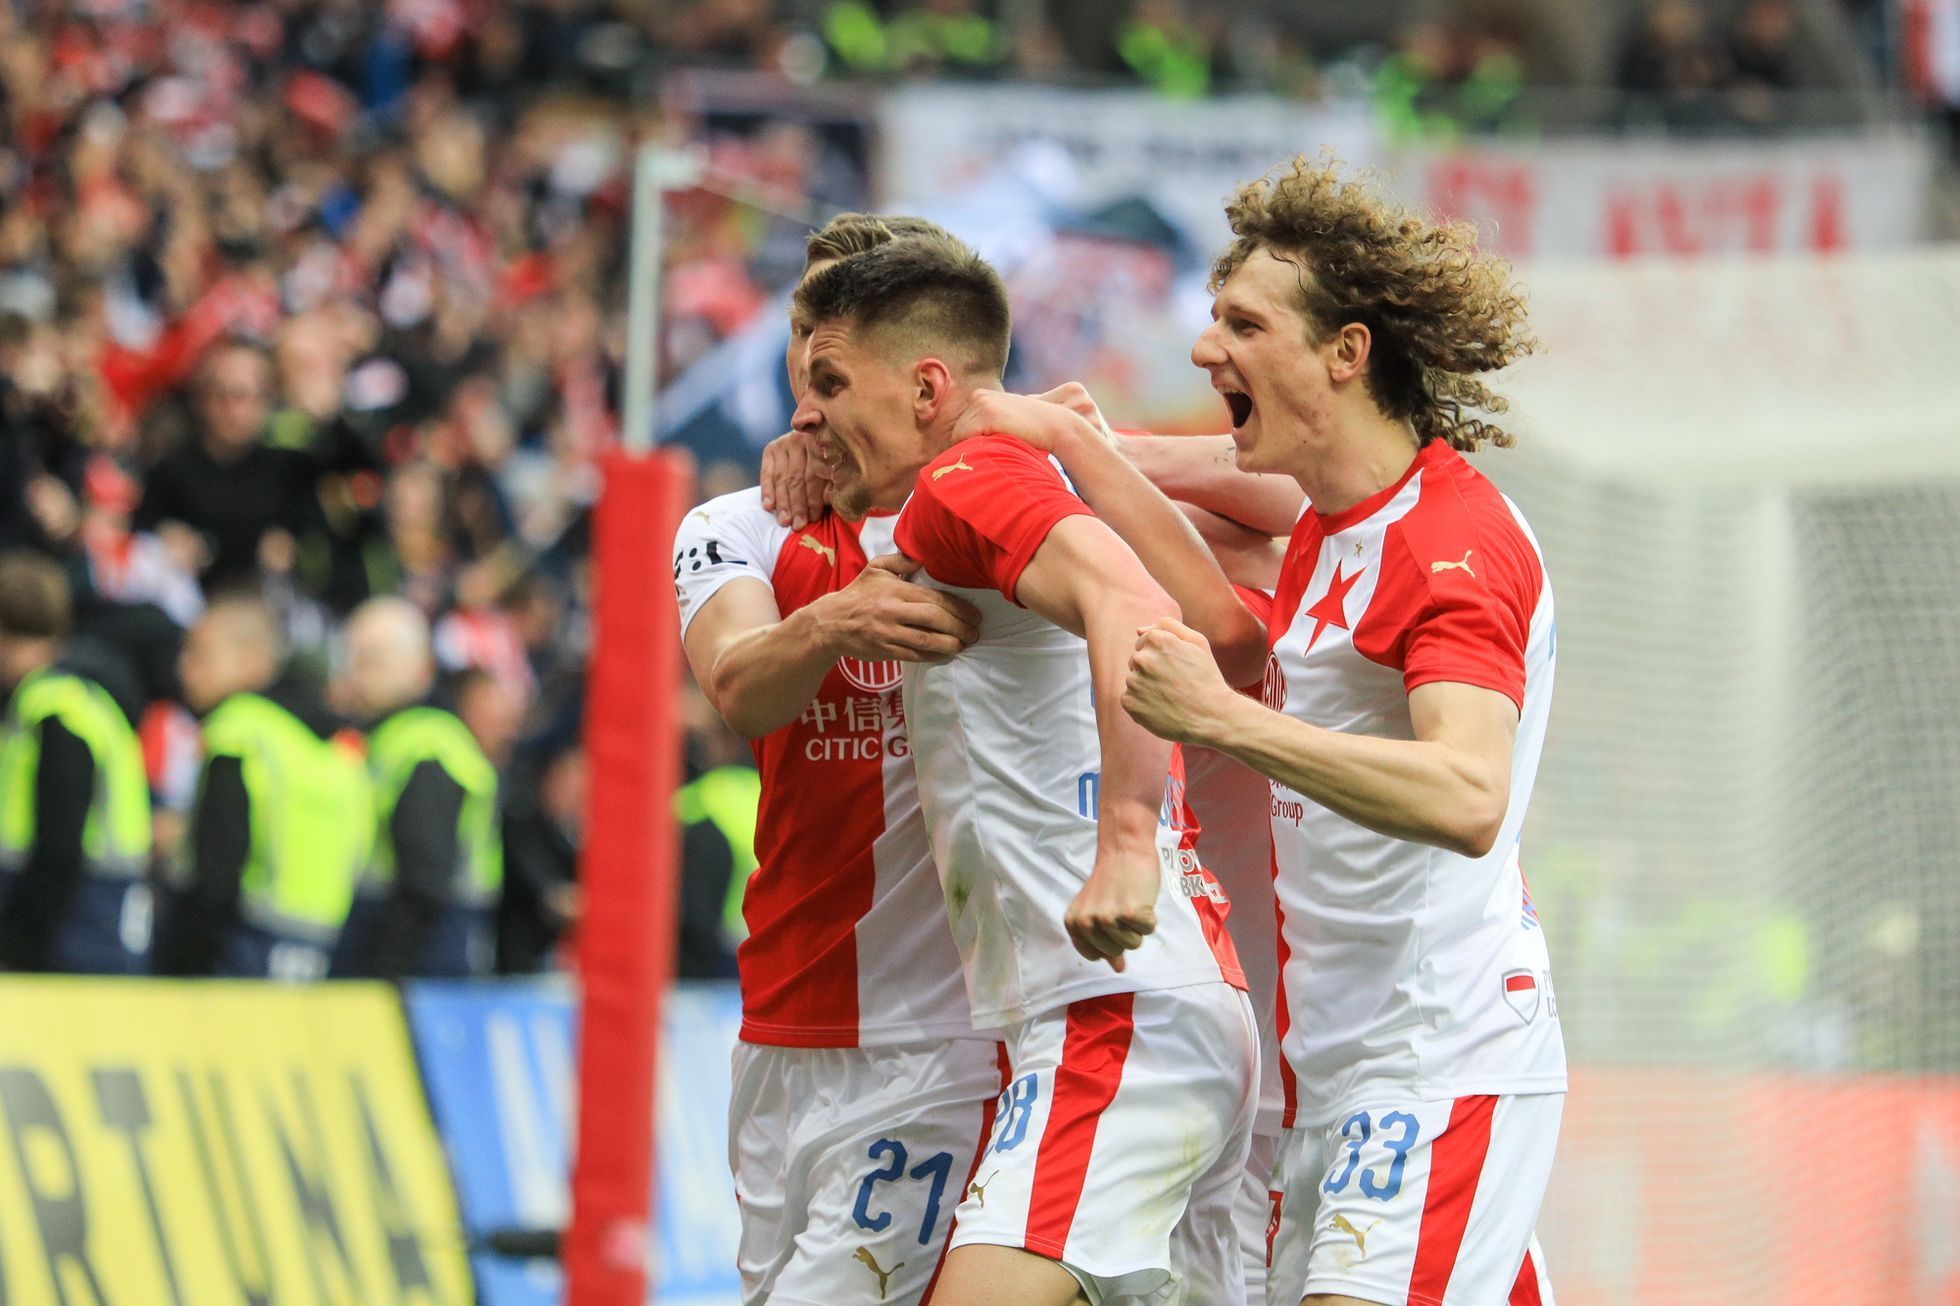 Slávistická radost v zápase nadstavby Slavia - Plzeň